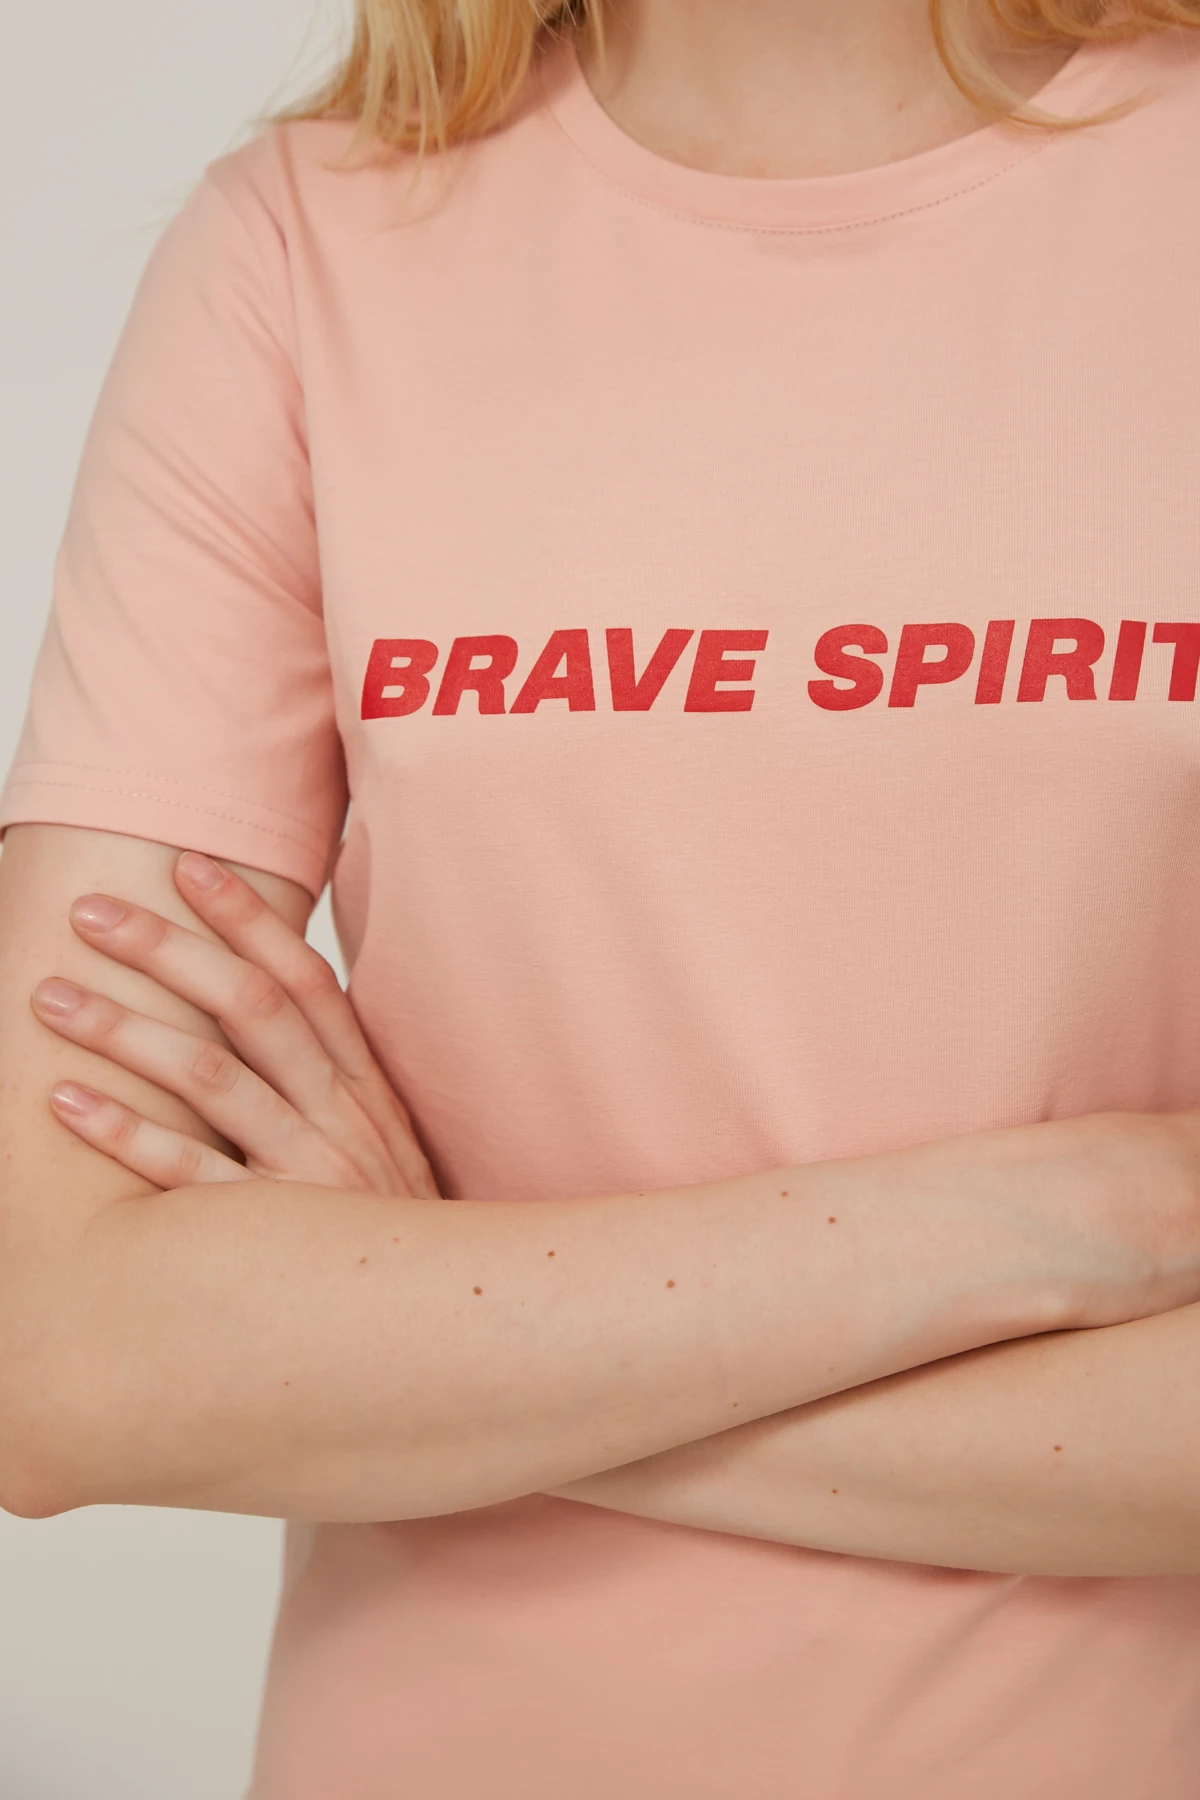 Пудрова трикотажна футболка з написом "Brave Spirit", фото 4